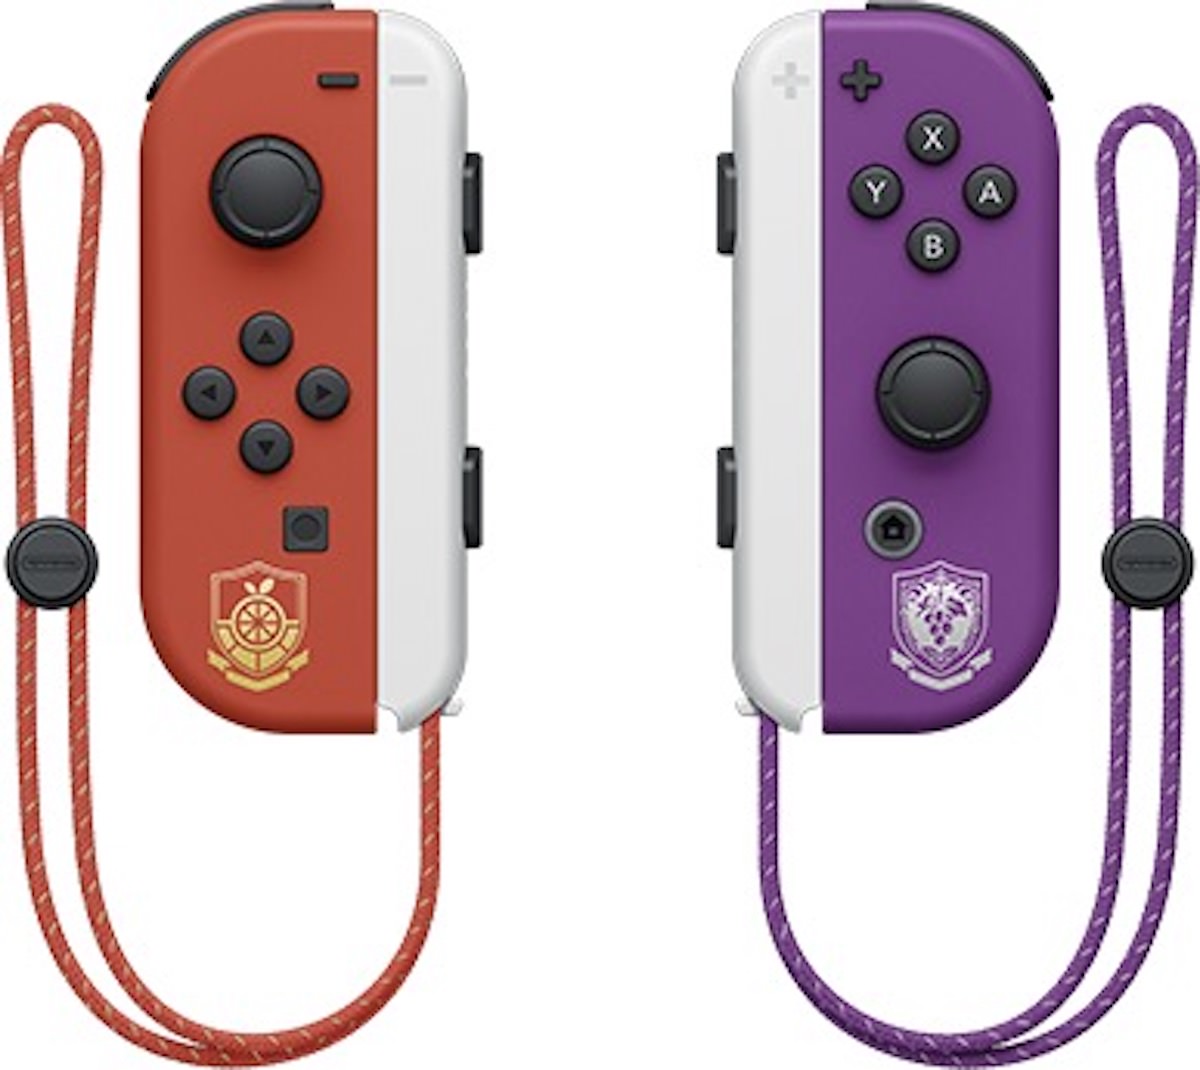 Nintendo Switch (有機ELモデル) スカーレット・バイオレット 